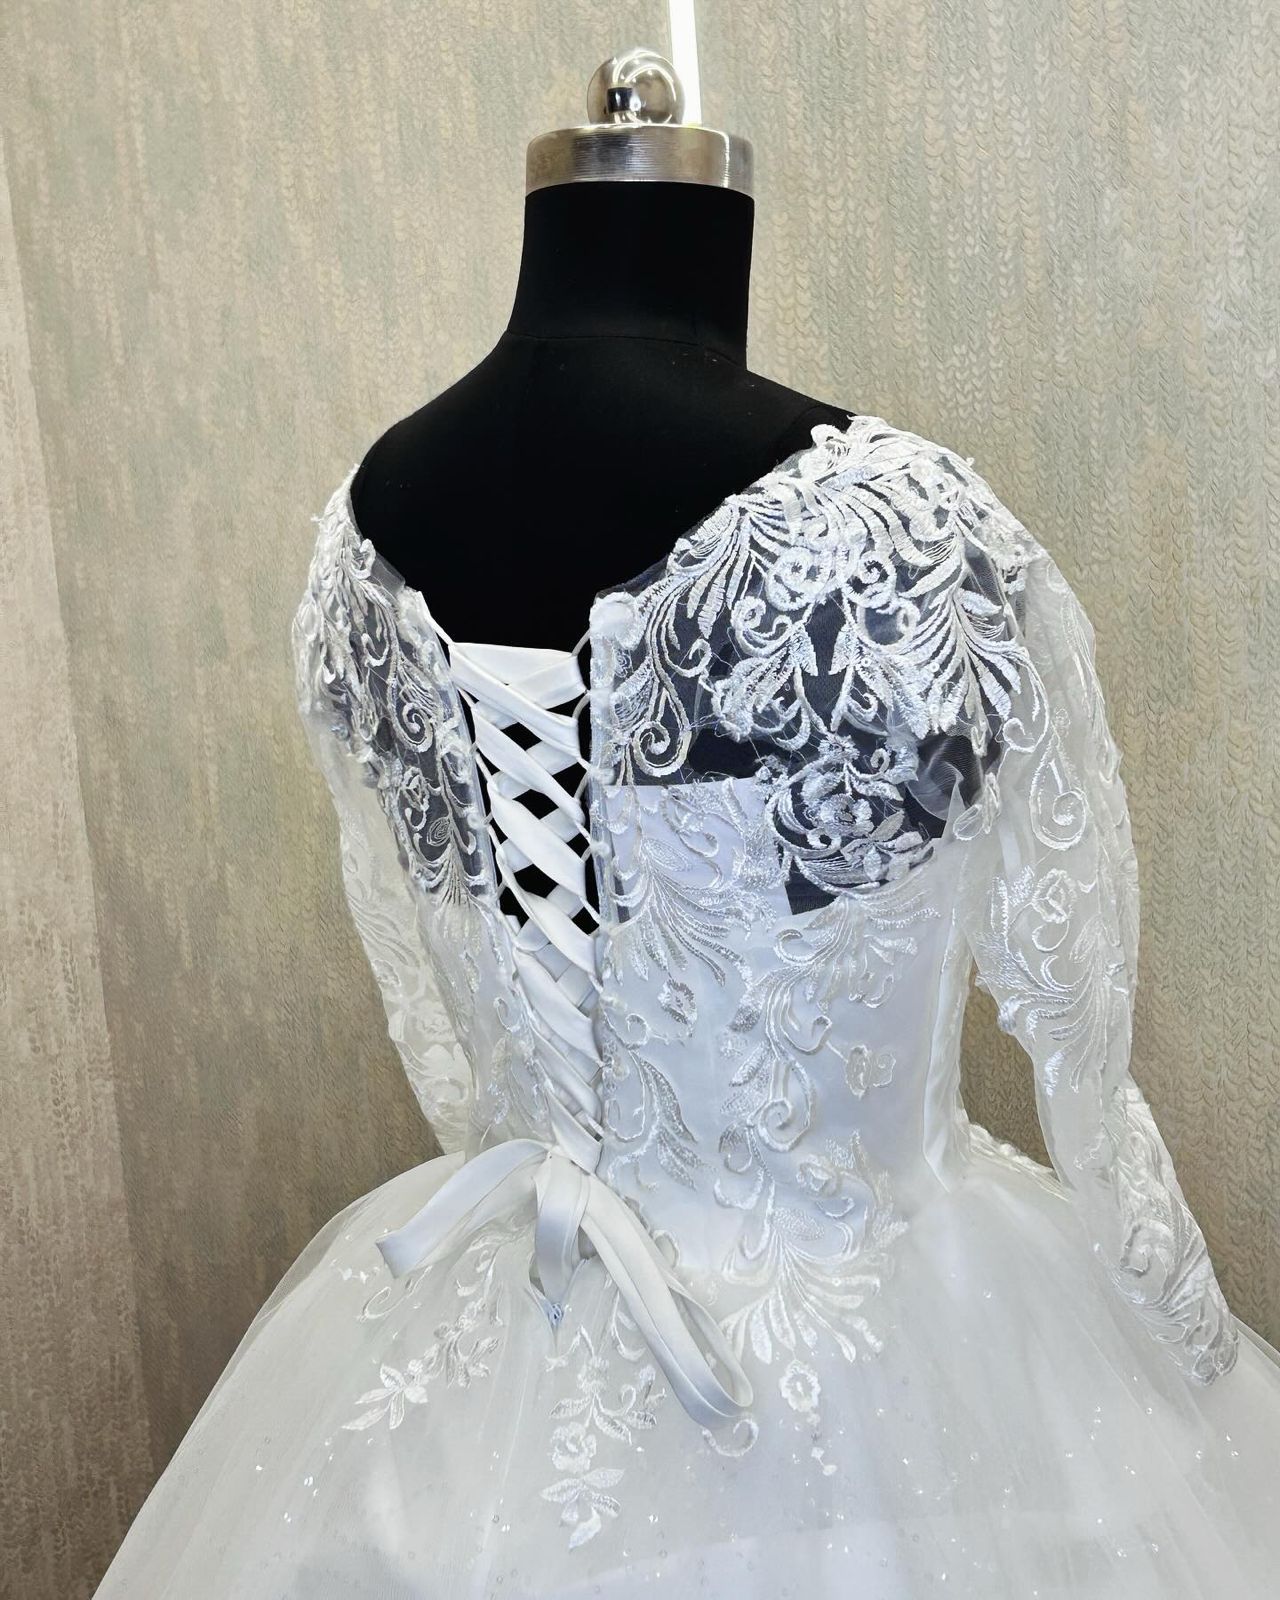 Is It Mandatory For Wedding Dress To Be White? | HOTLEATHERWORLD